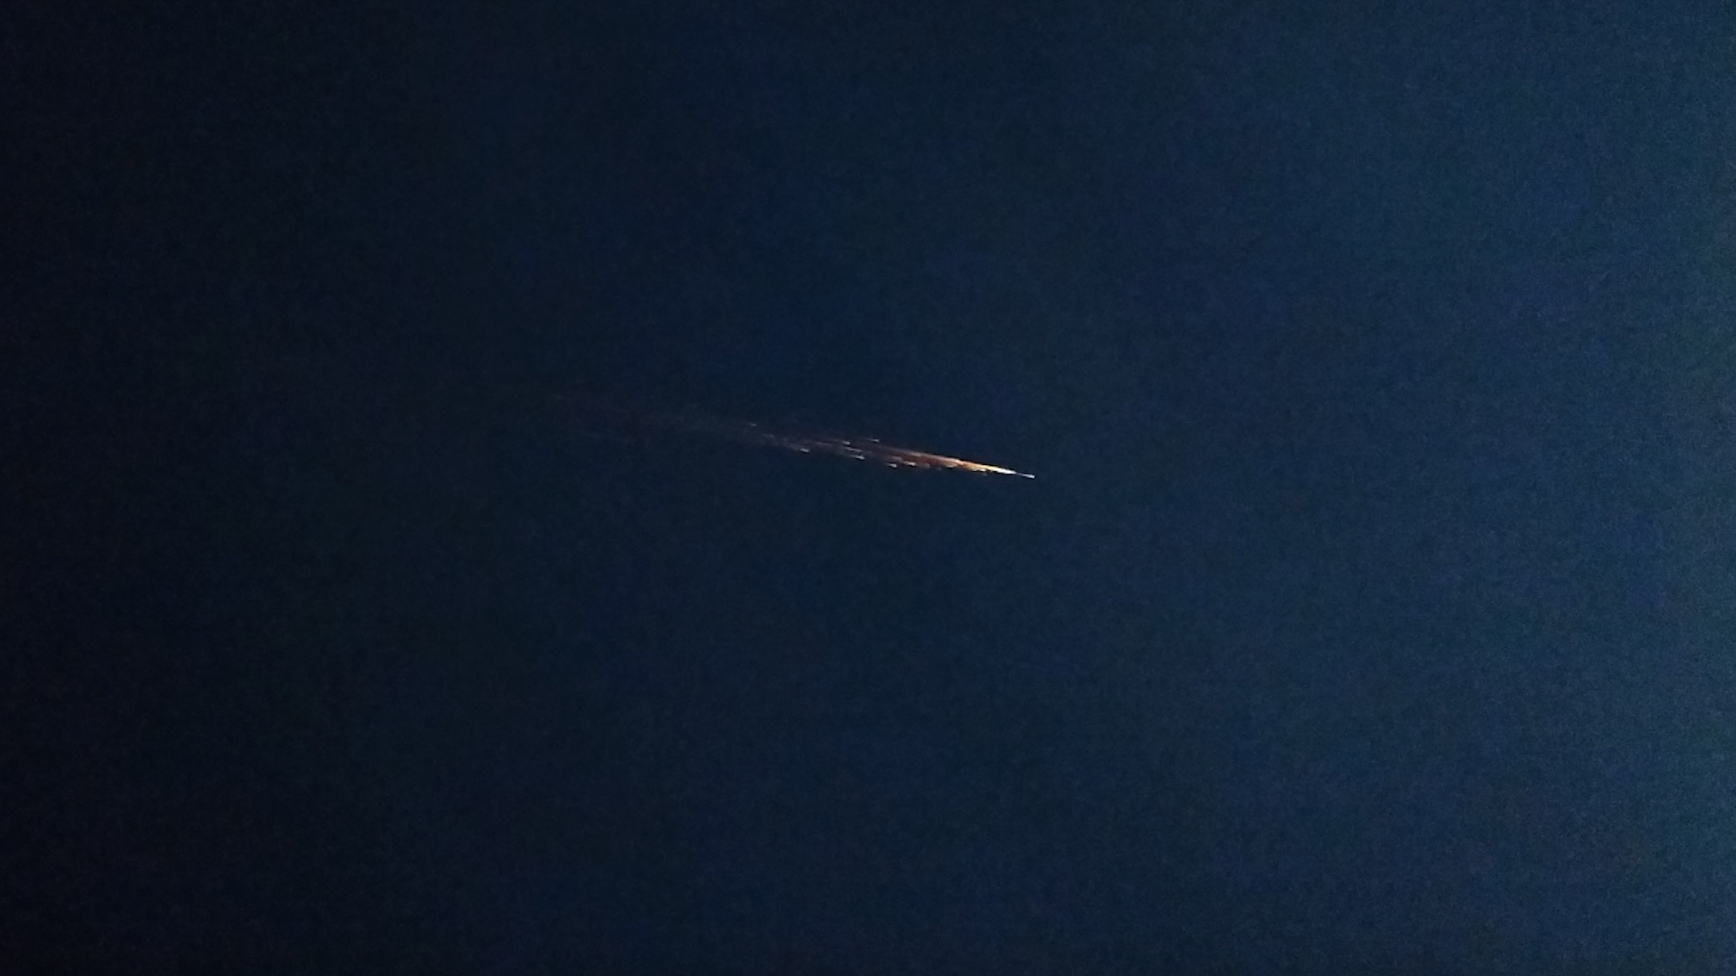 Космічний корабель, що падає, запалав вогняною кулею в нічному небі: фото